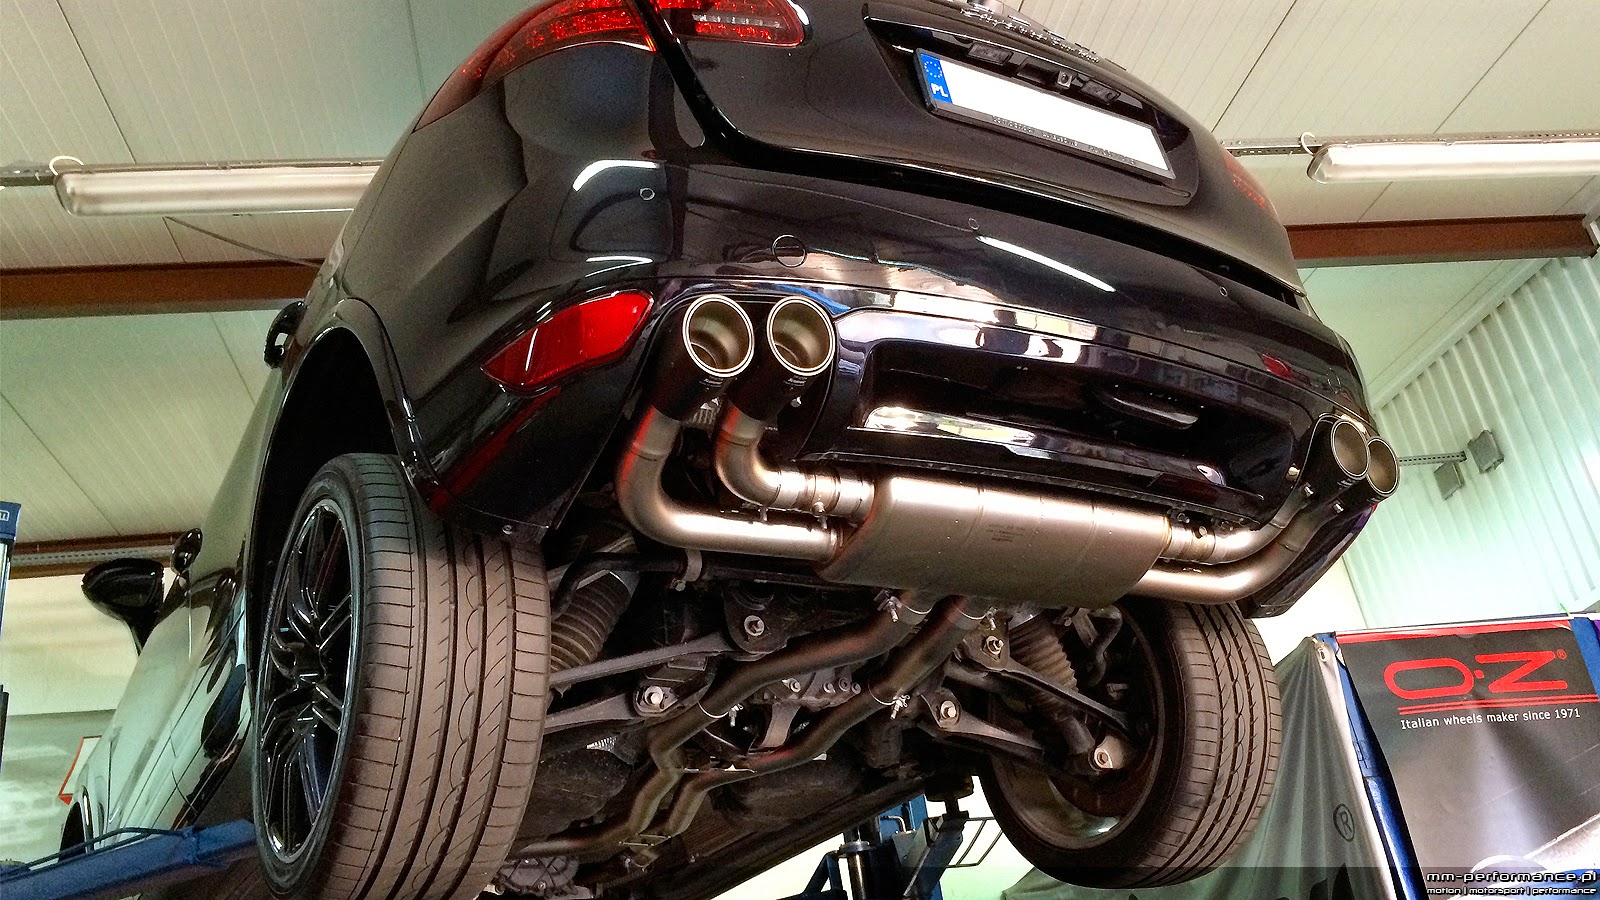 Mm-Performance.pl: Porsche Cayenne Turbo [958] Tytanowy Układ Wydechowy - Akrapovic | Rury Eliminujące Katalizatory - Cargraphic | Sportowe Filtry Powietrza - K&N ||| Tuned By Mm-Performance.pl